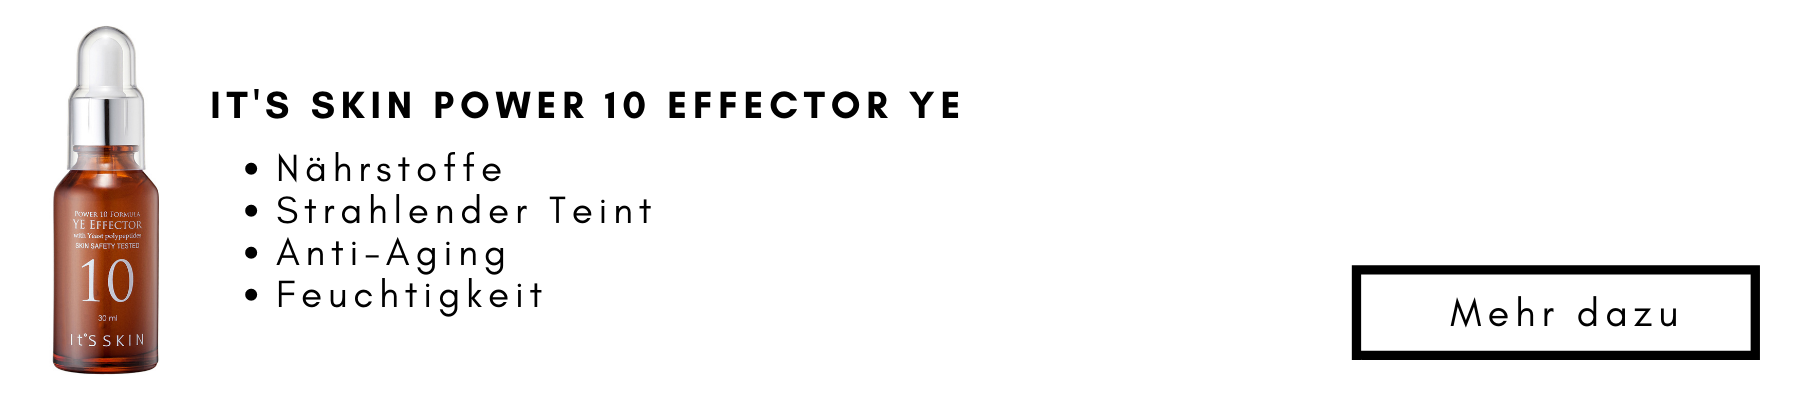 YE-Effector-Bild